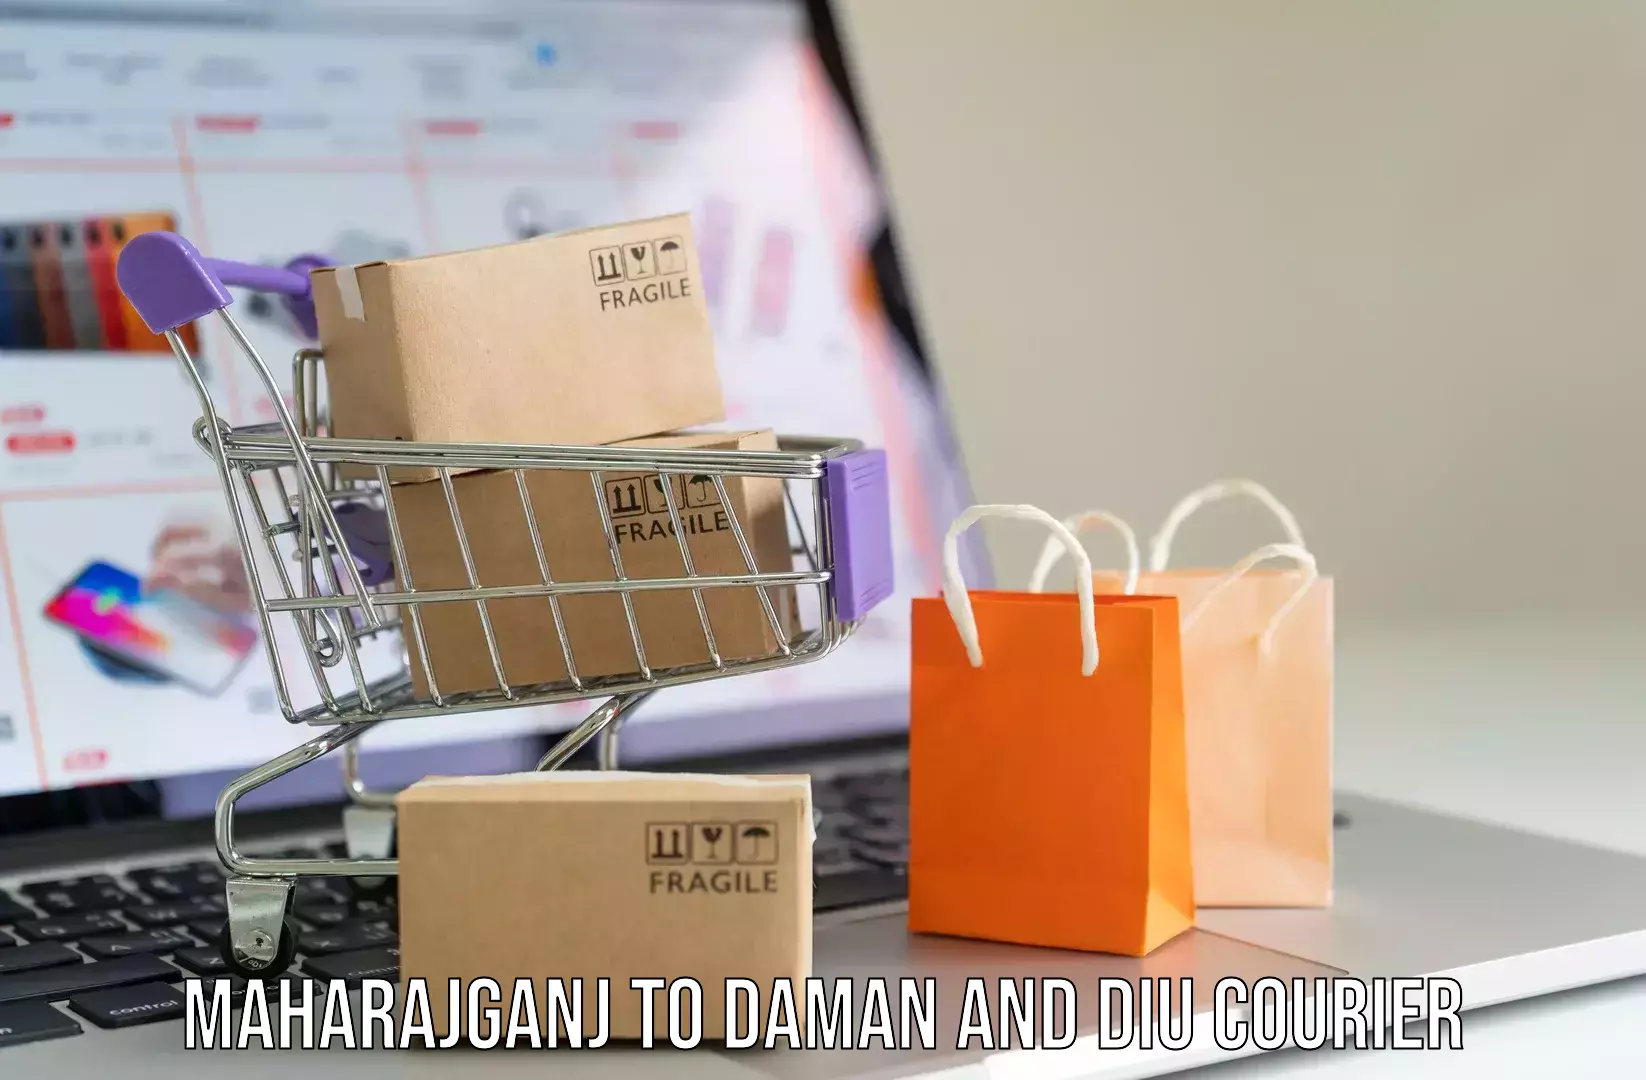 Baggage shipping service Maharajganj to Daman and Diu